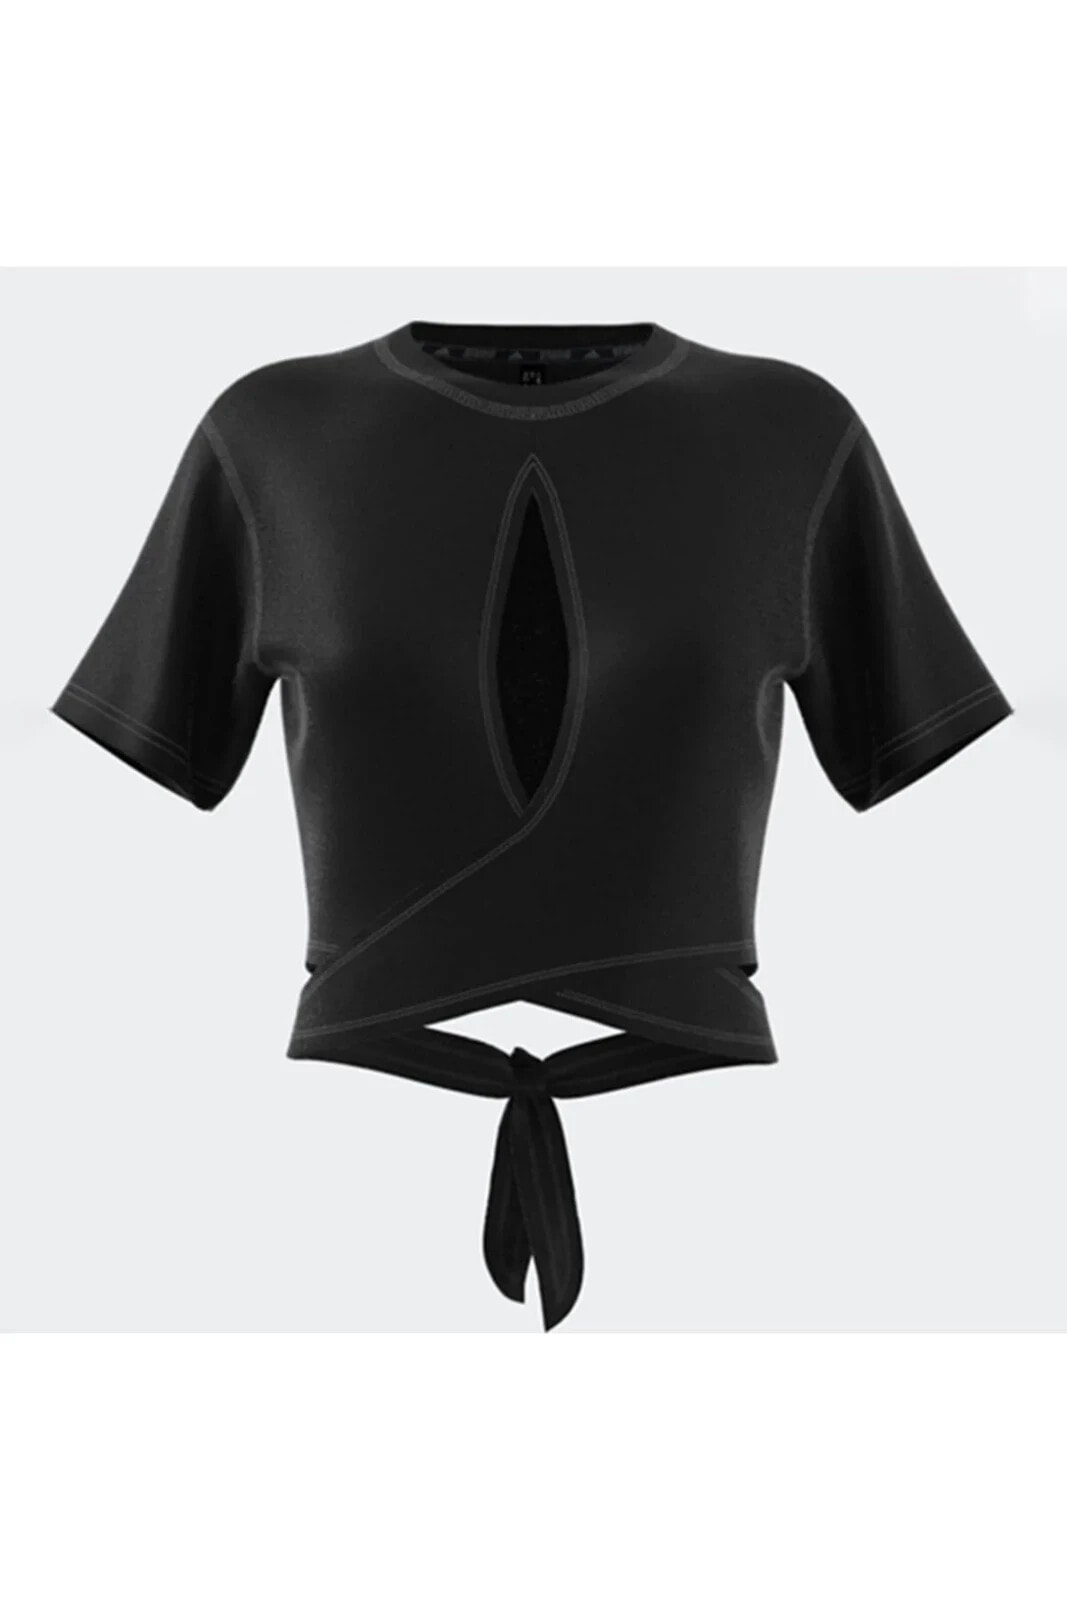 Yoga Studio Kadın Siyah Tişört (hs8115)